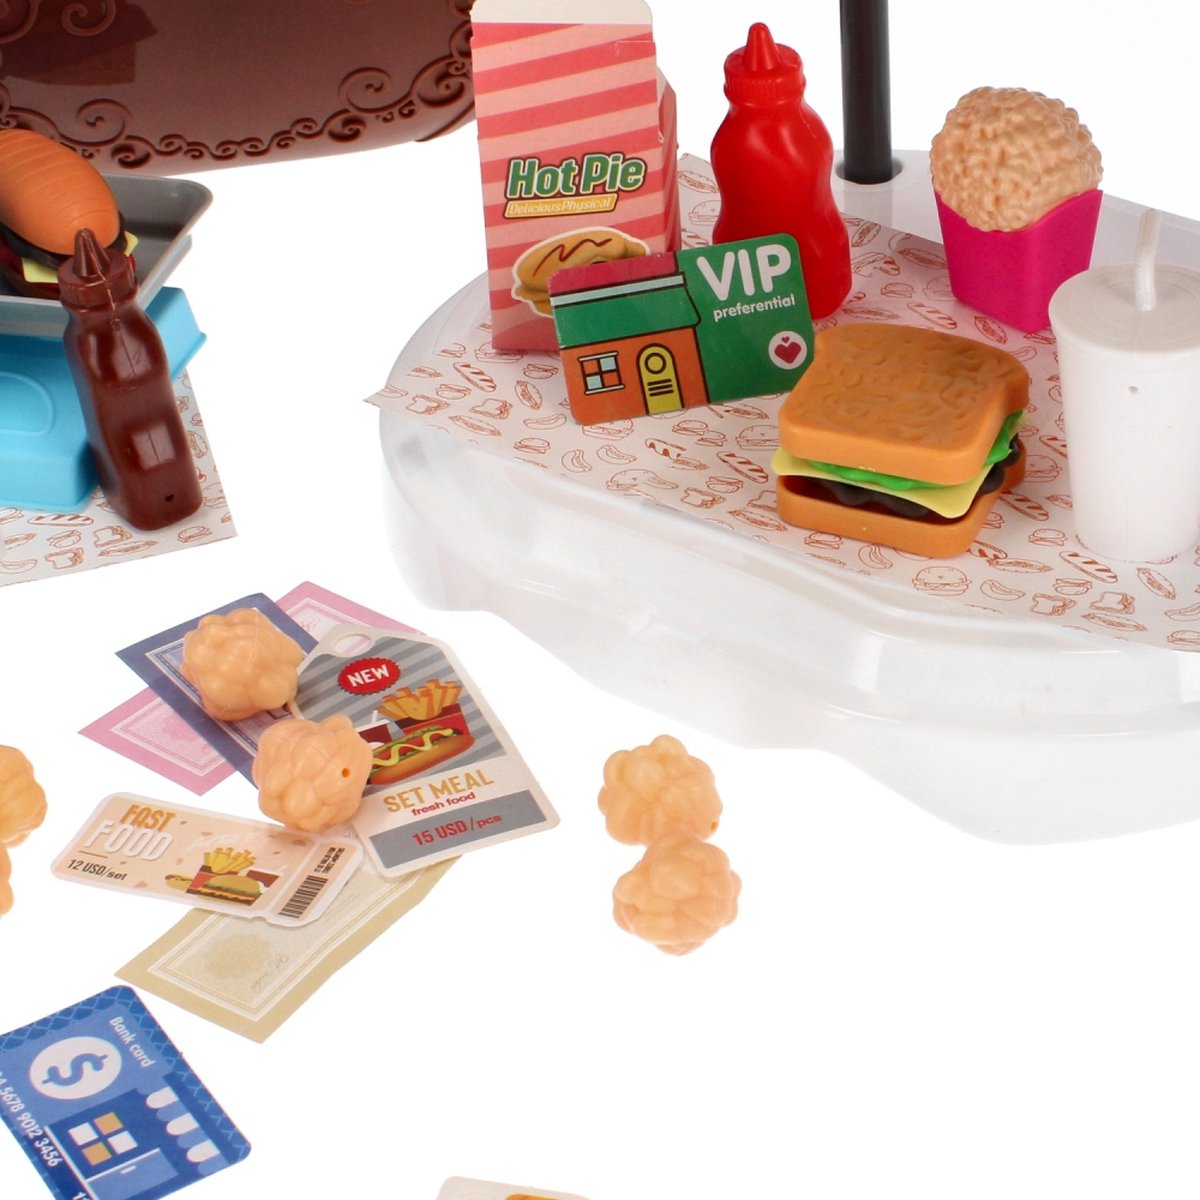 <tc>Ariko</tc>  Spielzeugkoffer Fast-Food-Laden 58 Teile - Hamburger, Popcorn, Saucen, Zangen und vieles mehr - praktischer Koffer zum Mitnehmen